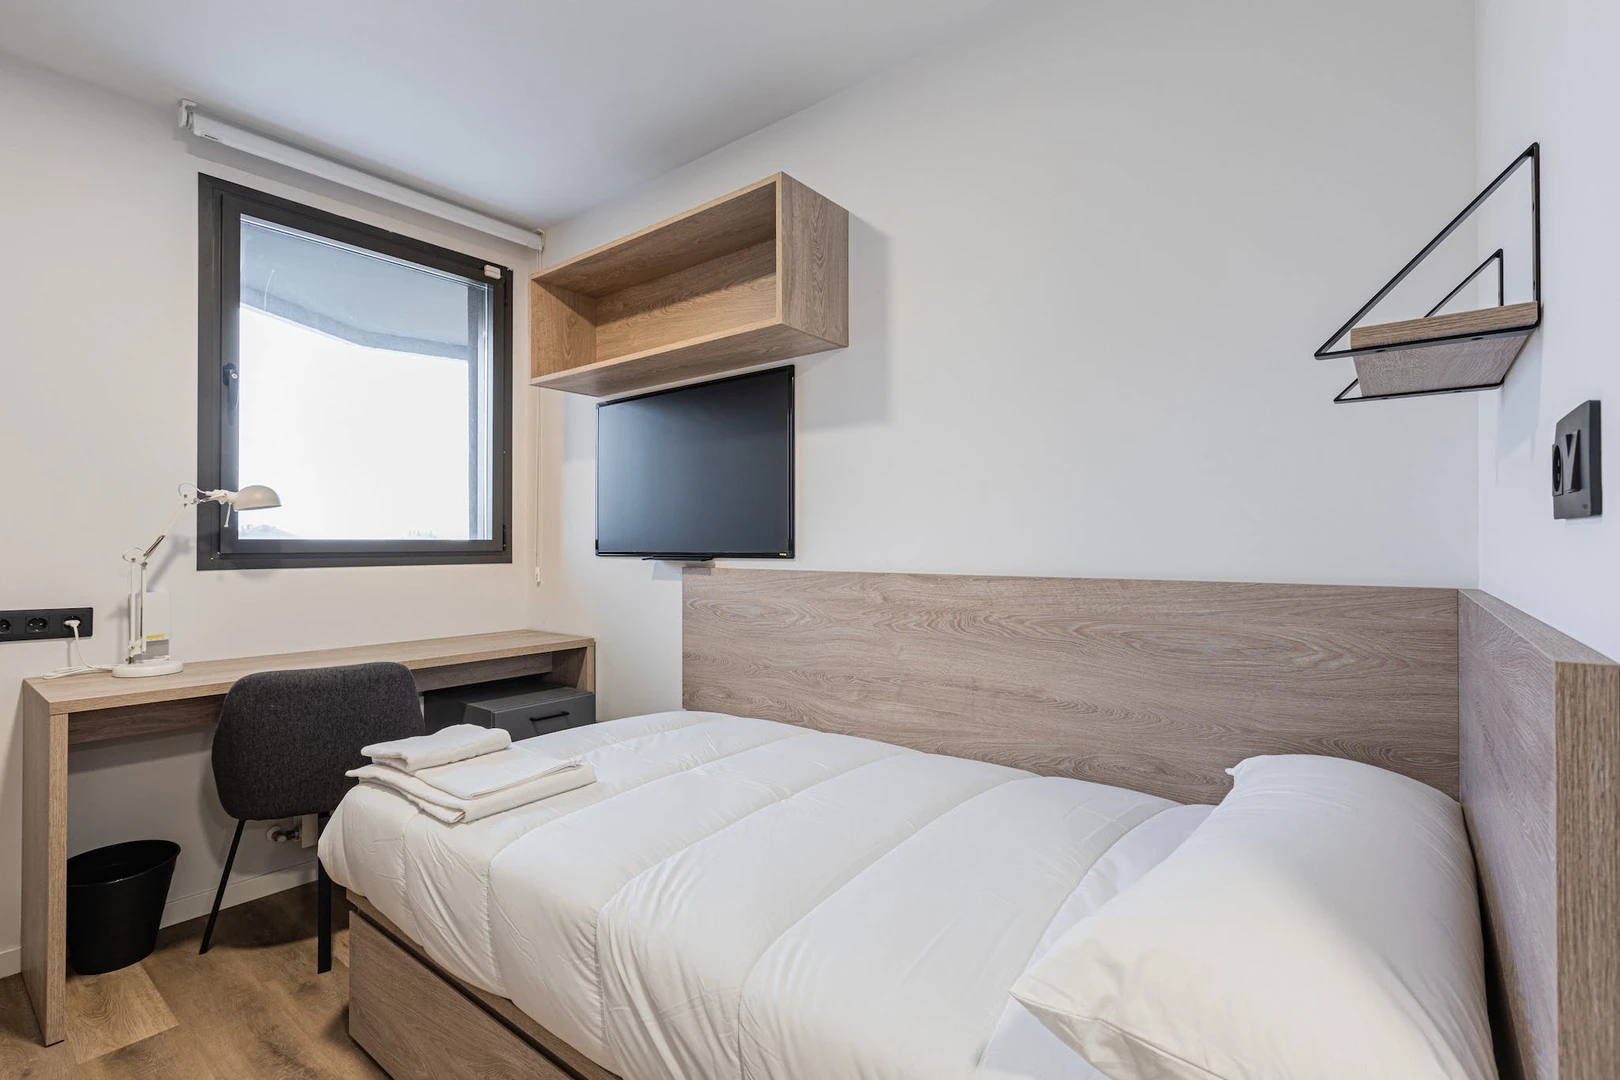 Santander de çift kişilik yataklı kiralık oda